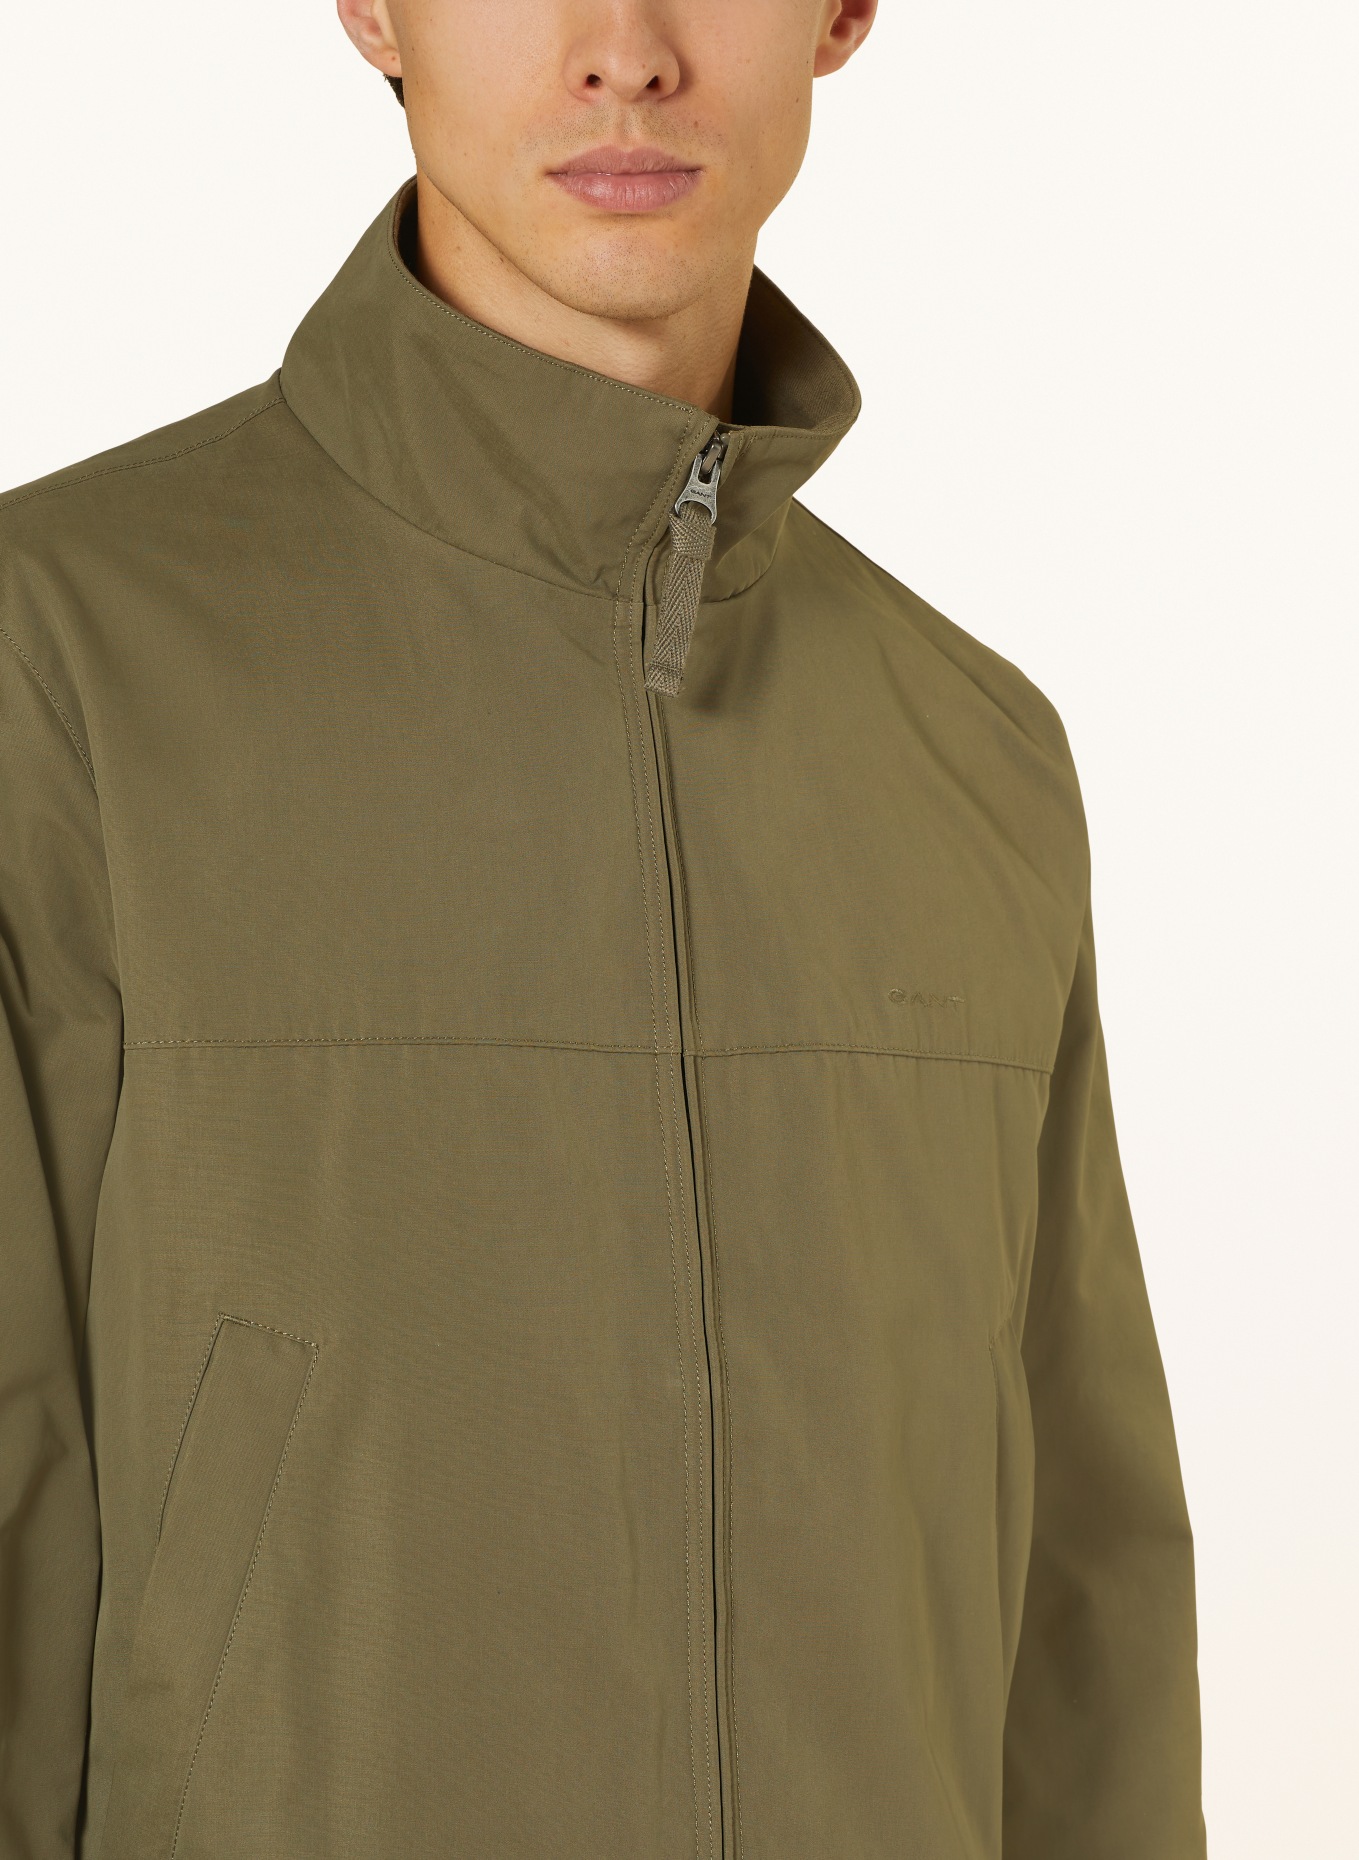 GANT Bomber jacket, Color: OLIVE (Image 4)